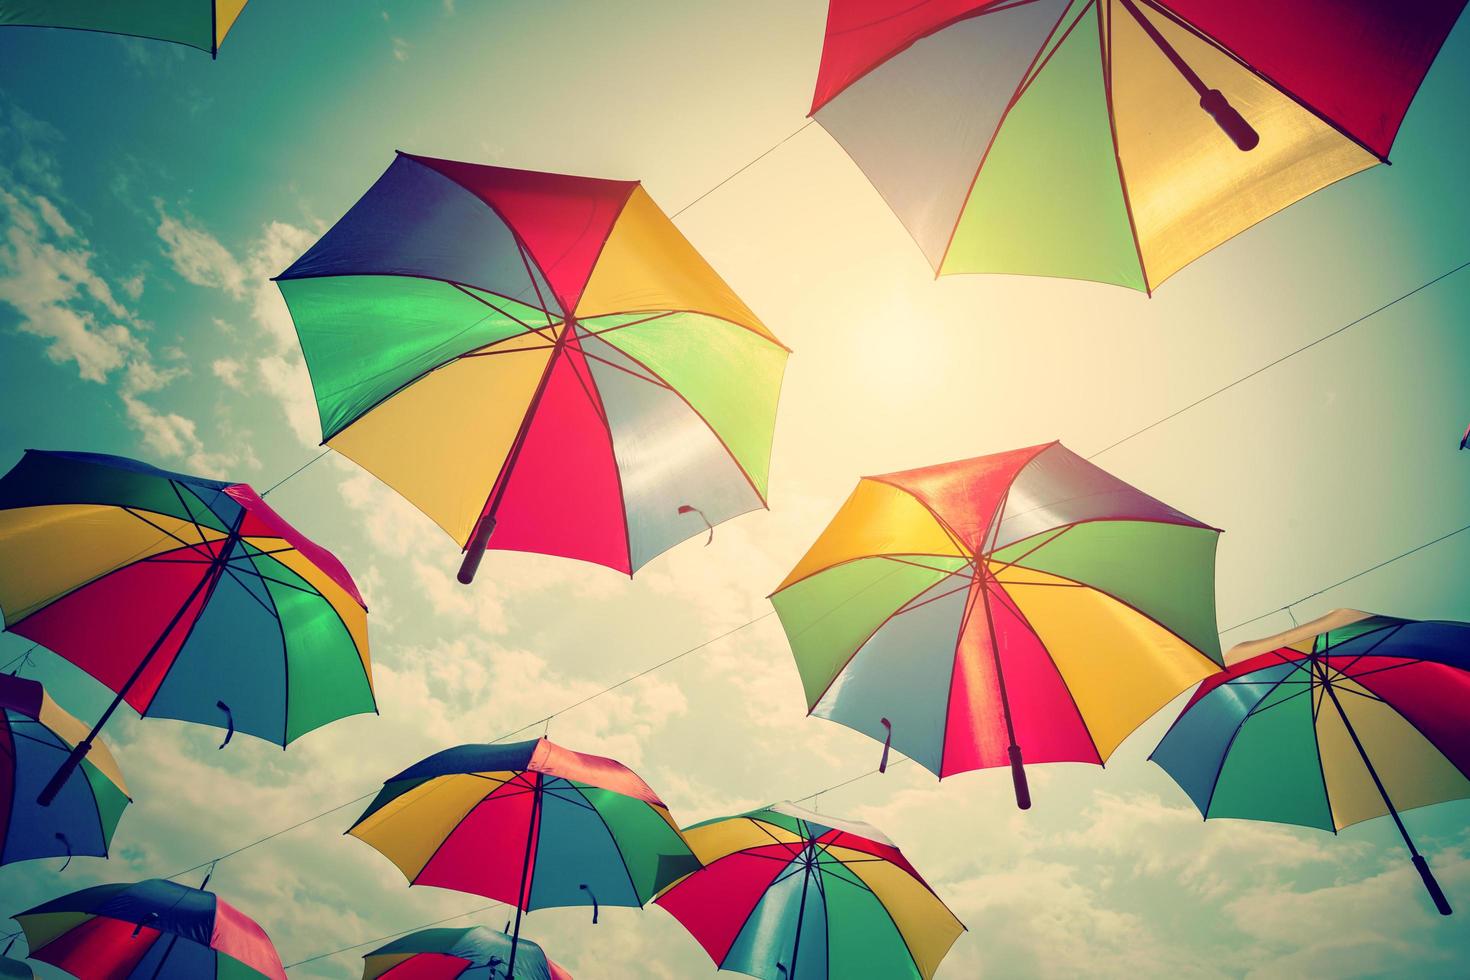 colorato ombrello strada decorazione con luce del sole. Vintage ▾ tono. foto